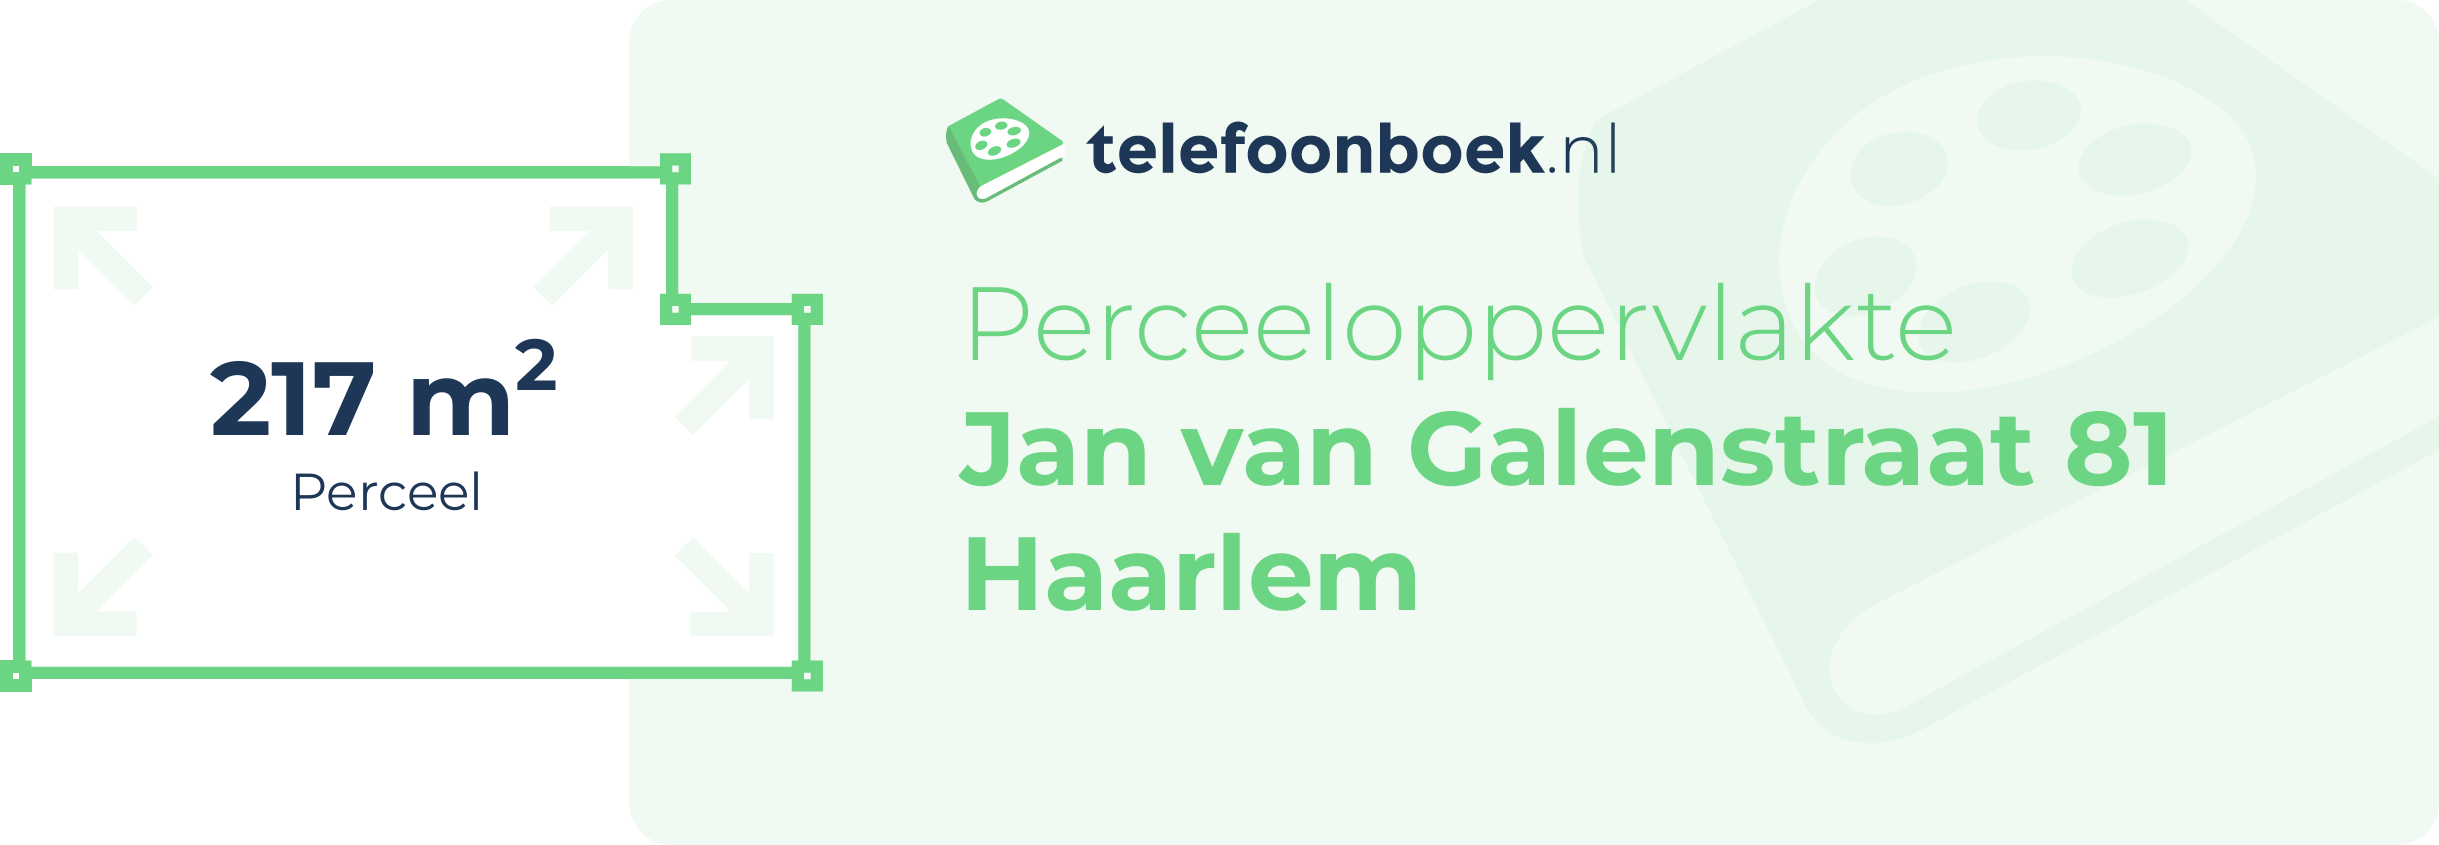 Perceeloppervlakte Jan Van Galenstraat 81 Haarlem